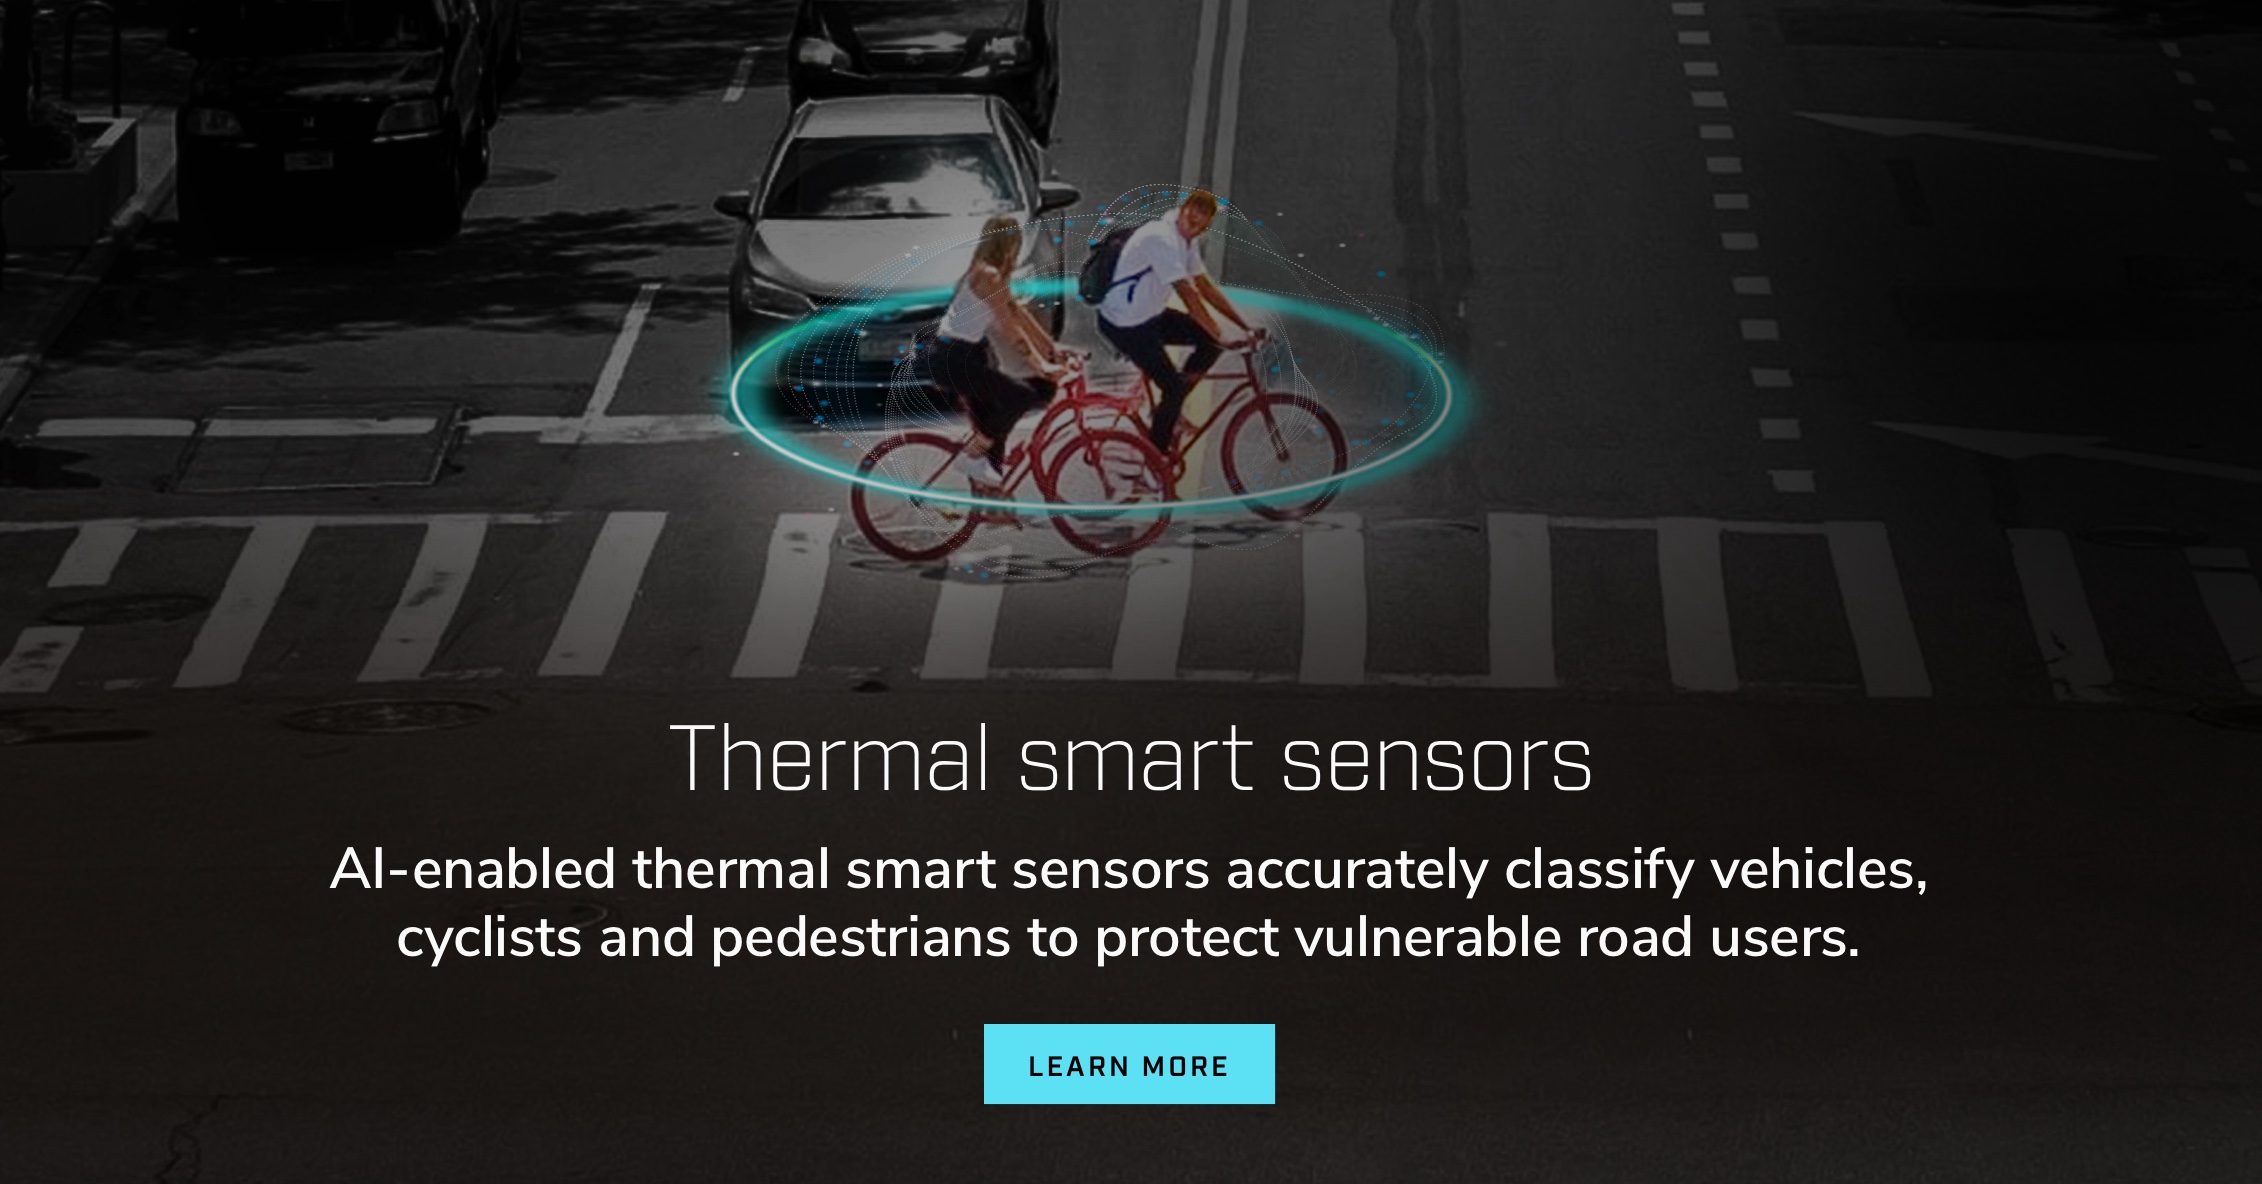 Sensores térmicos inteligentes. Os sensores térmicos inteligentes habilitados por IA classificam veículos, ciclistas e pedestres com precisão, protegendo os usuários vulneráveis das vias.